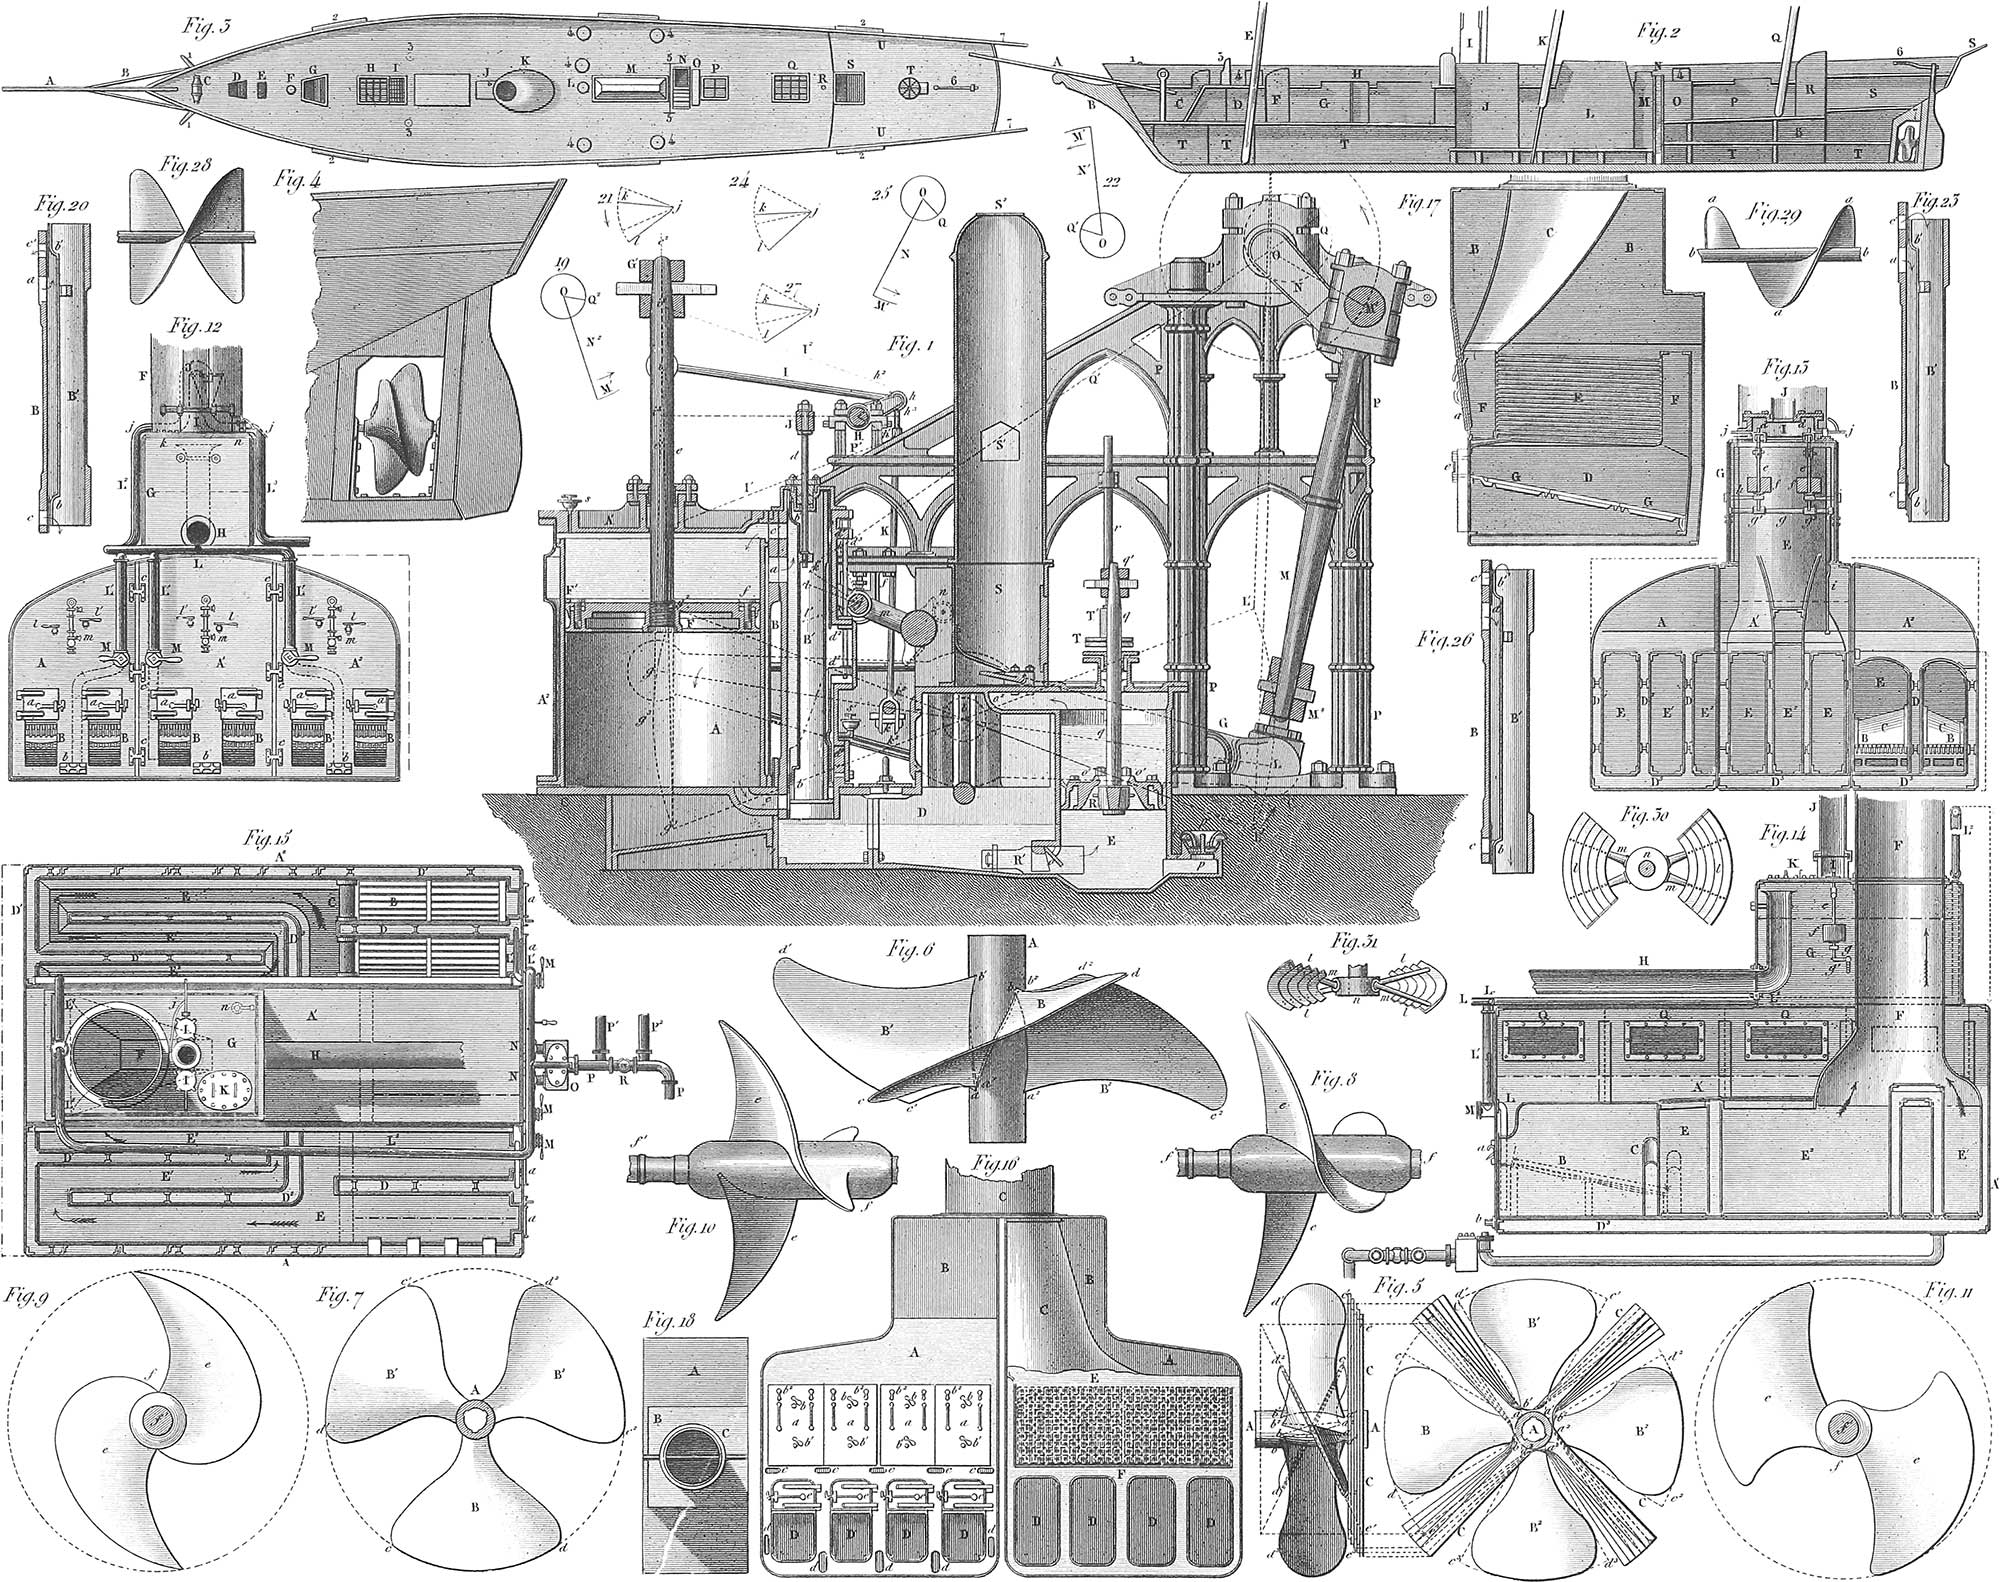 Naval Sciences - Iconographic Encyclopædia of Science, Literature